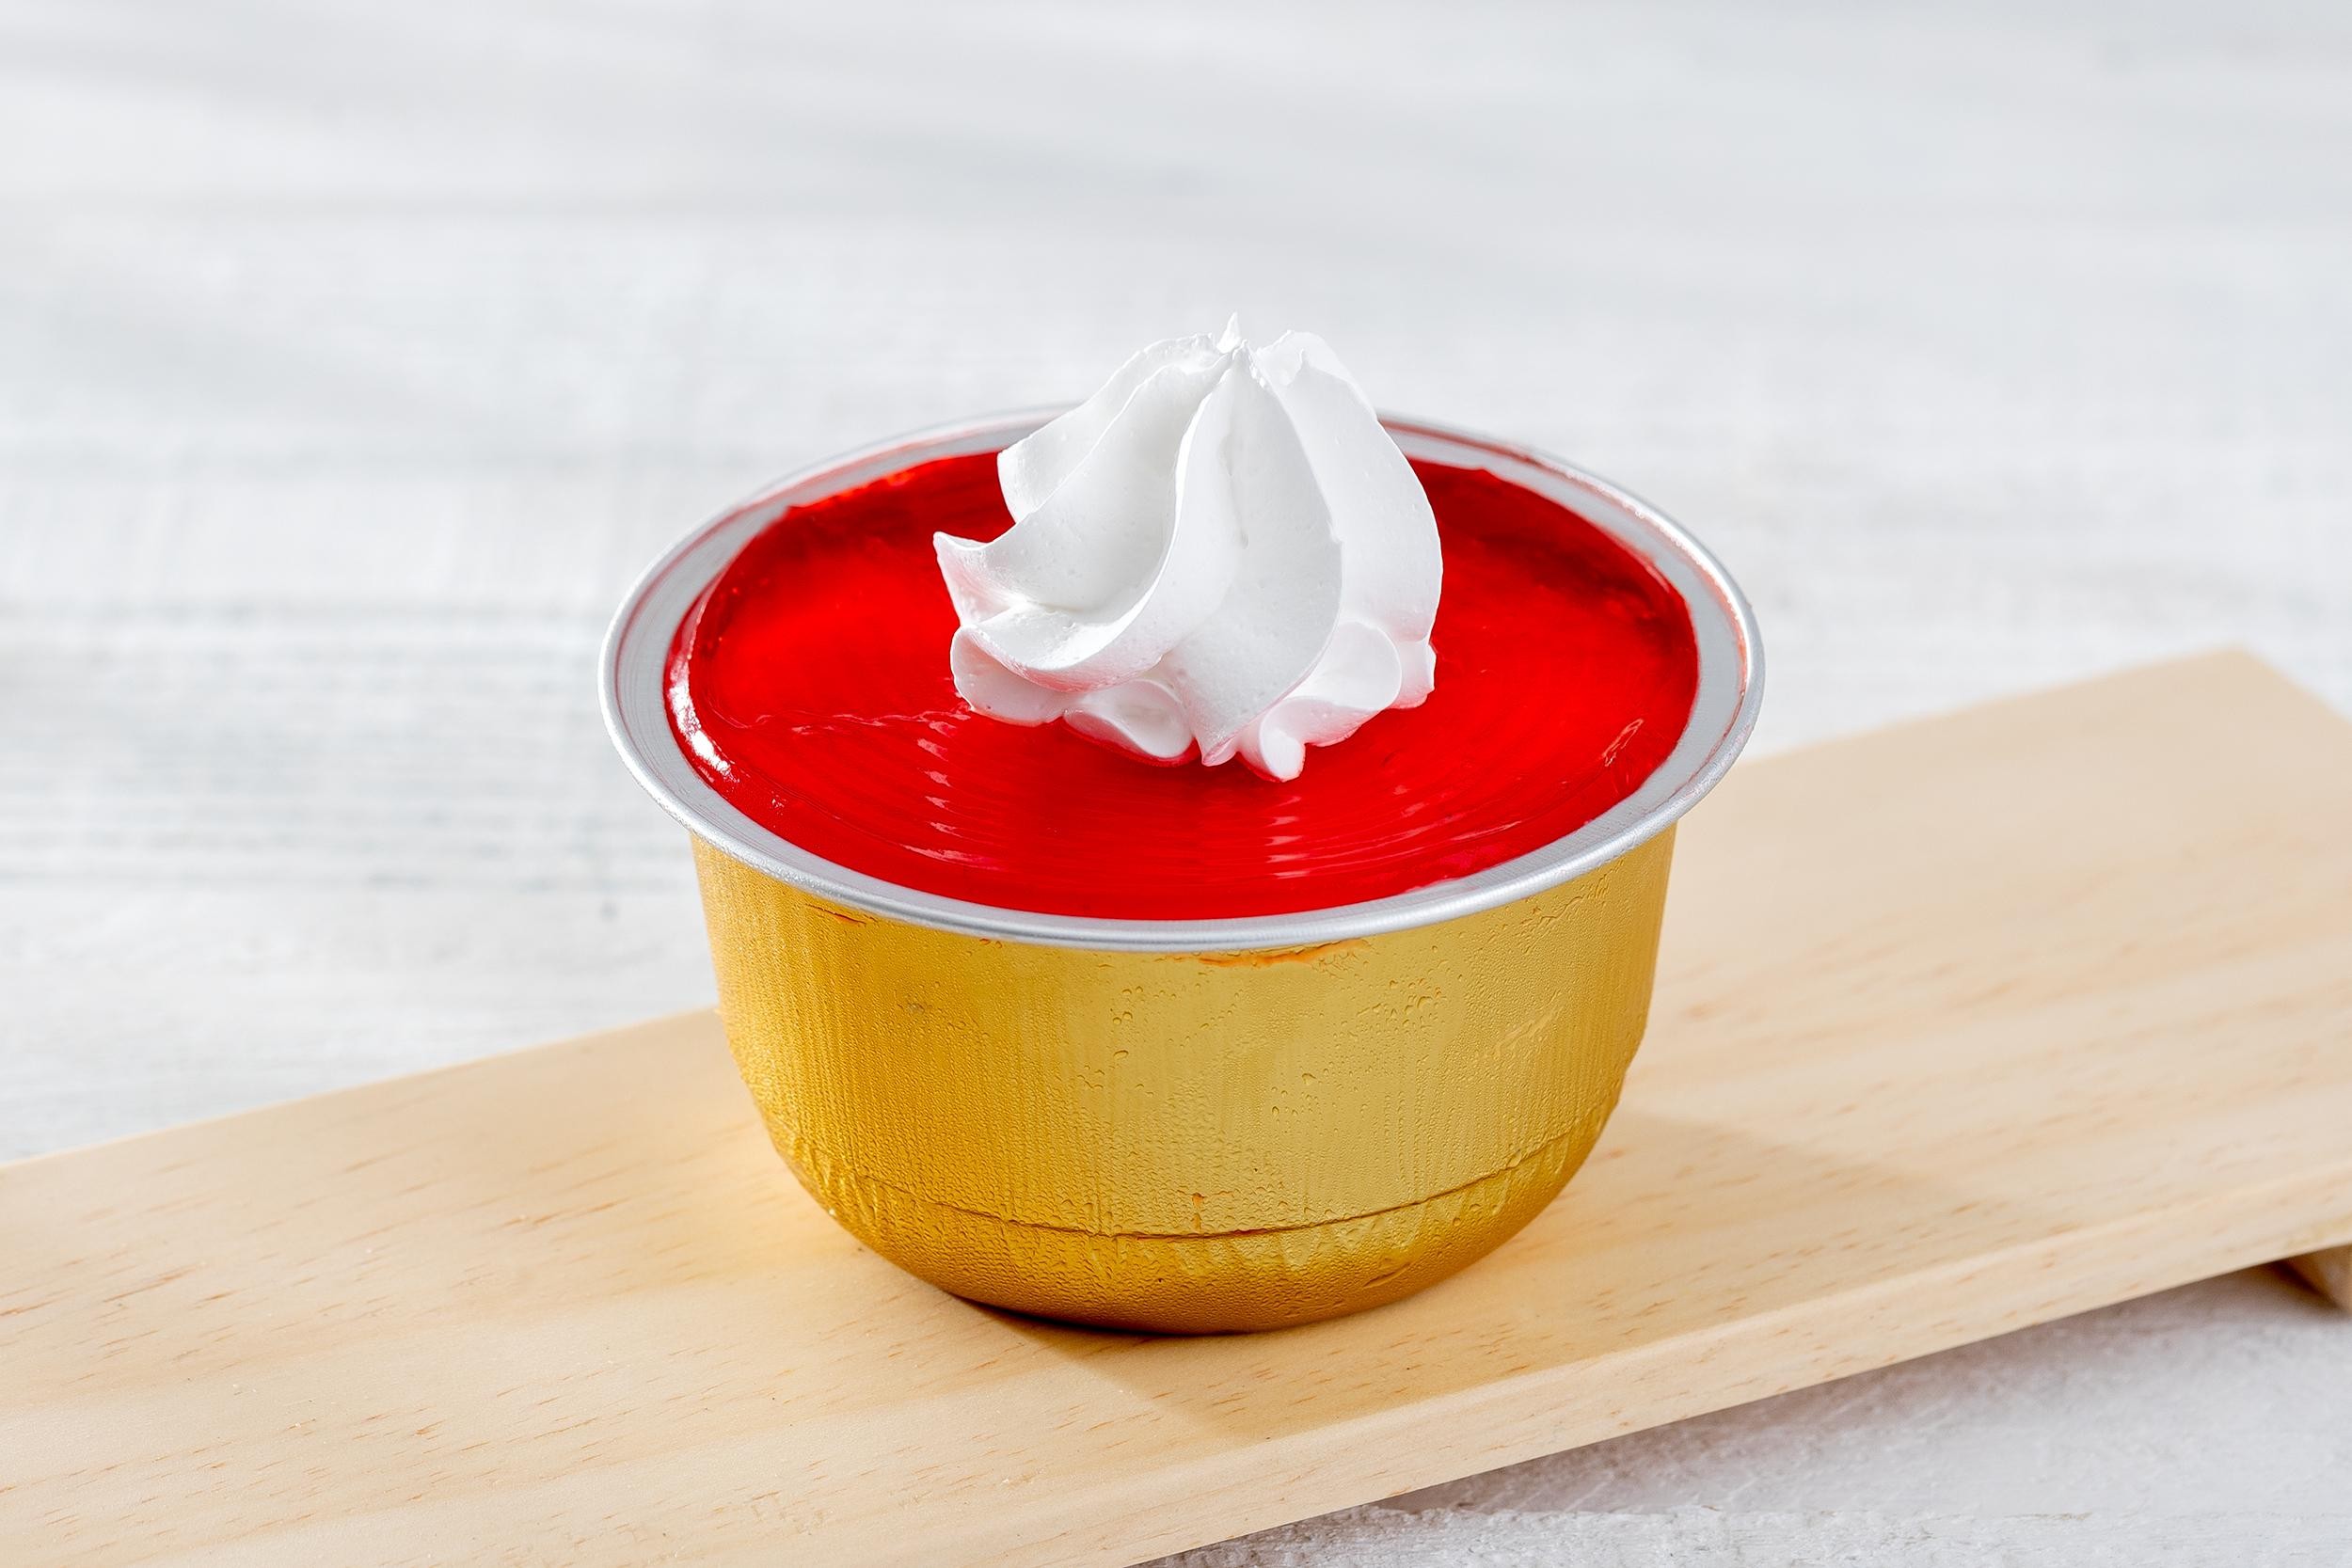 Cheesecake Strawberry Slice